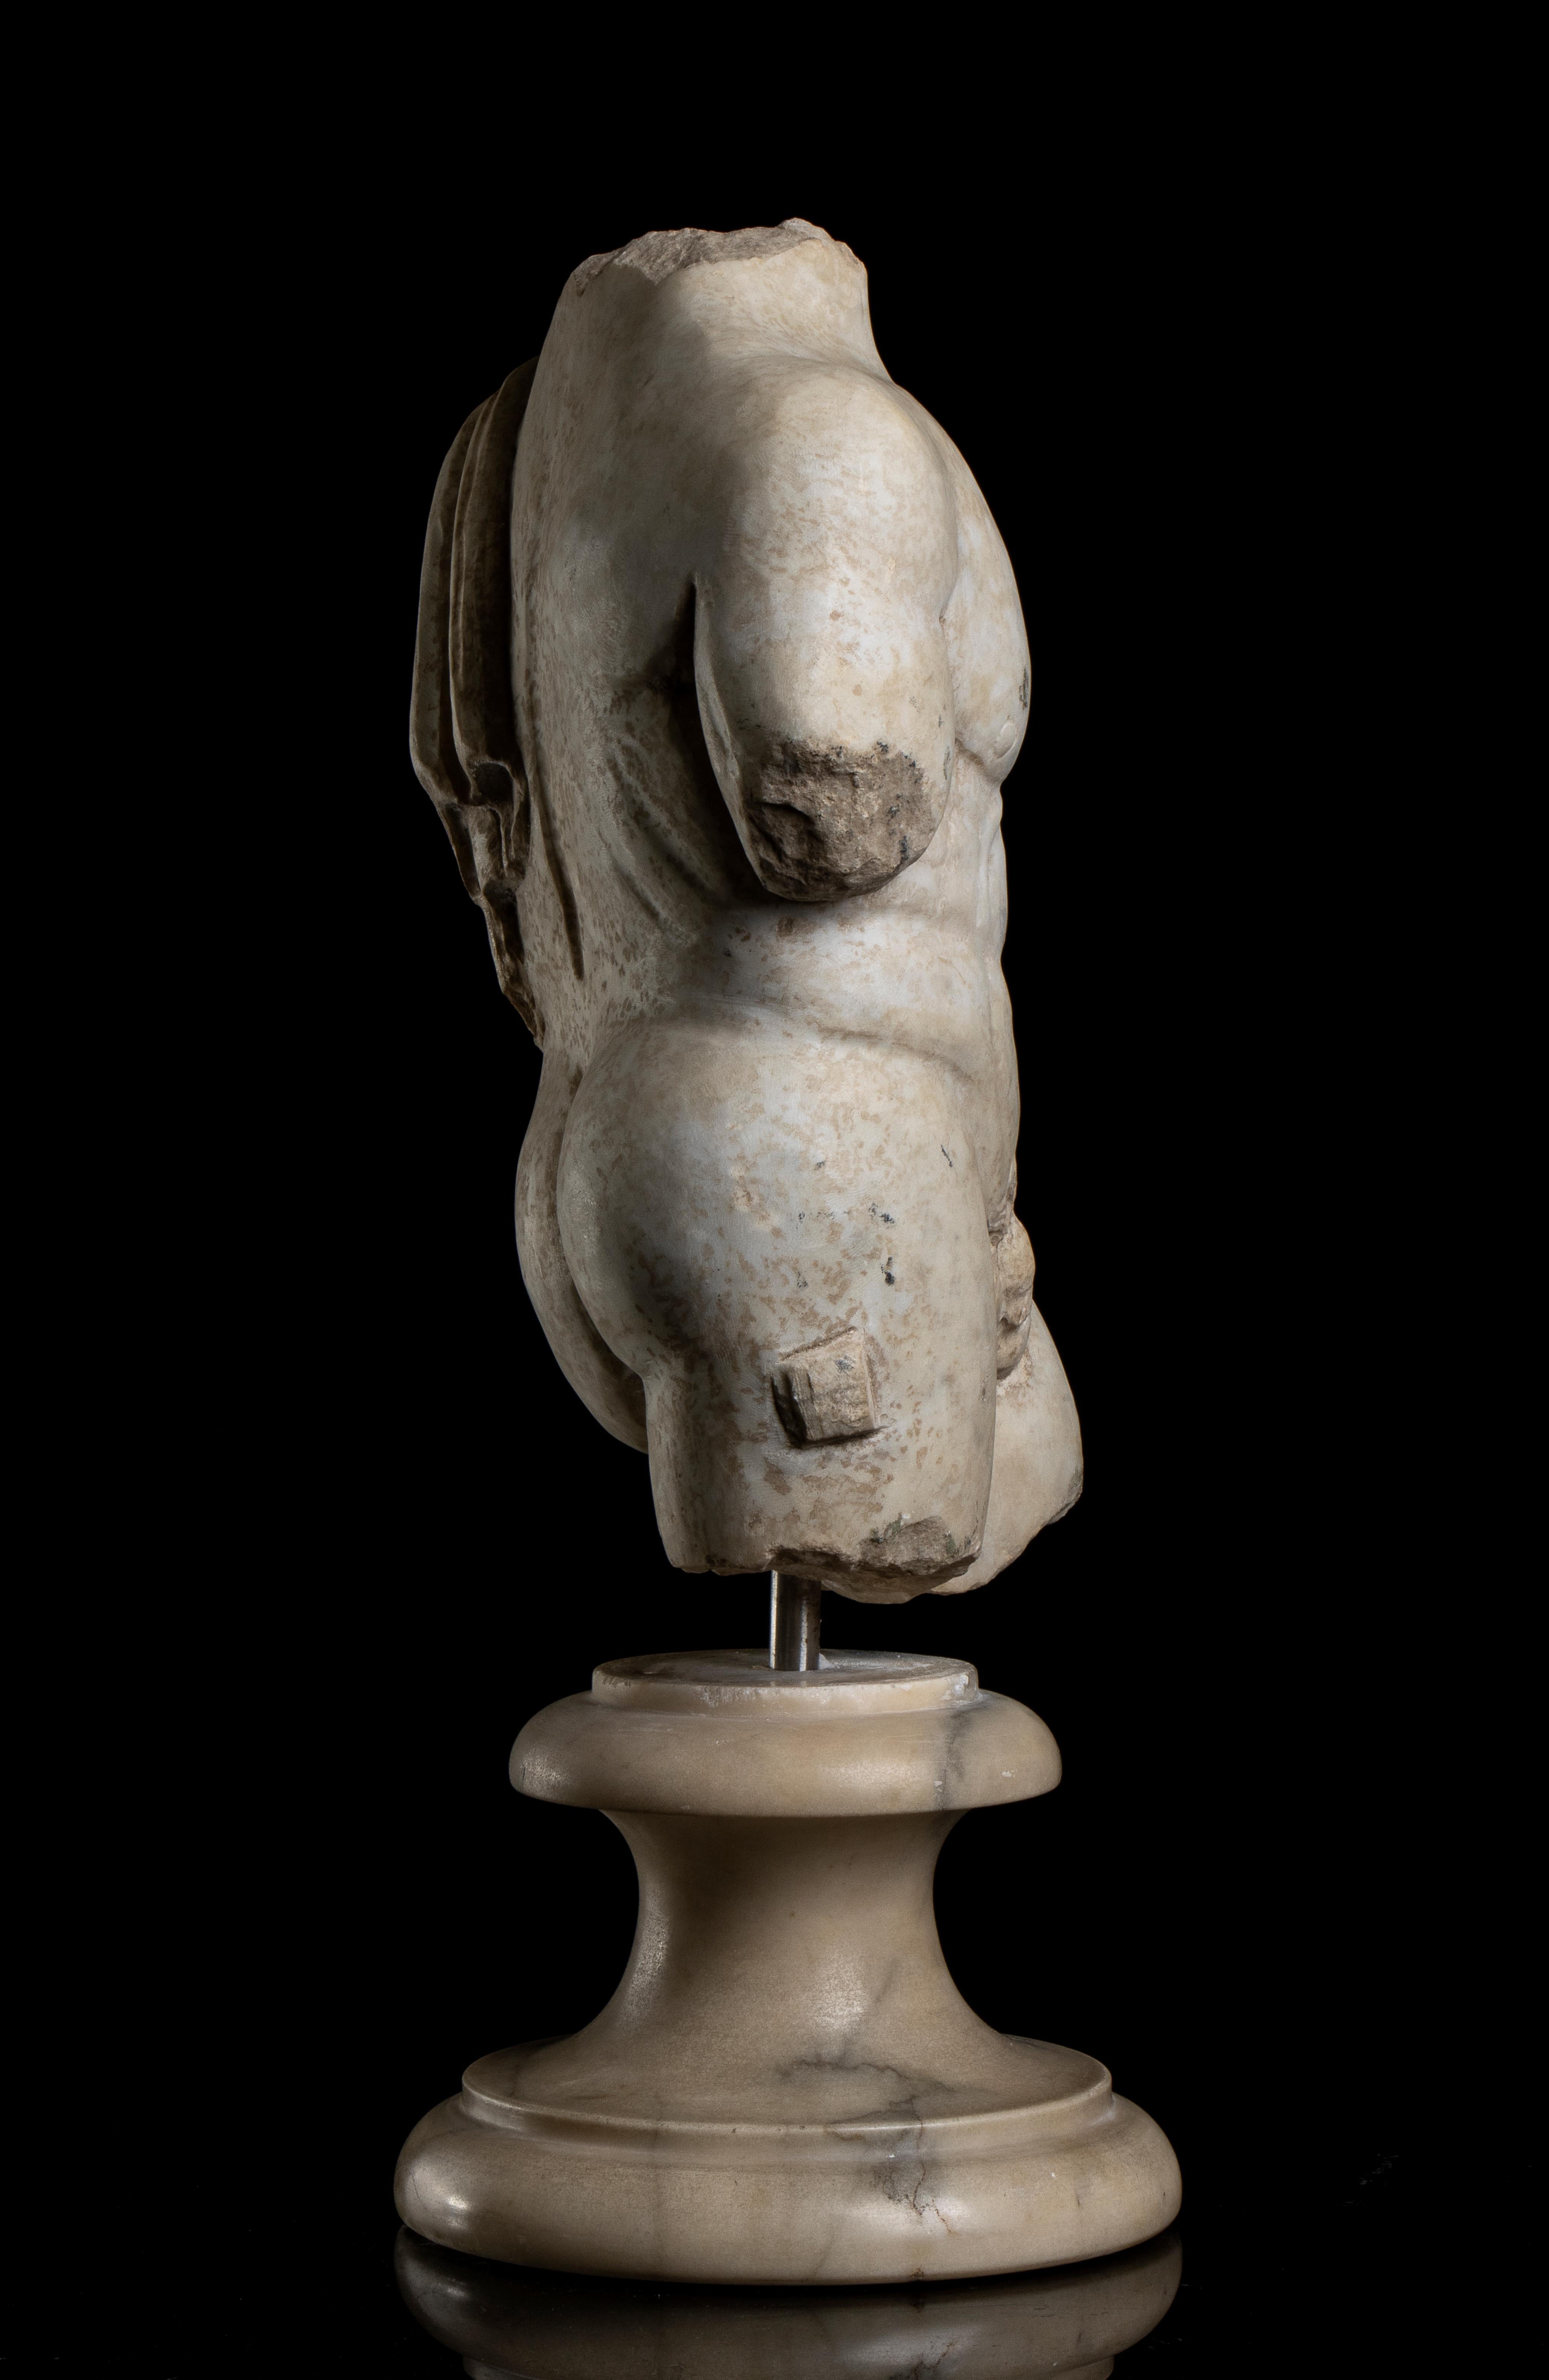 Torso des Herakles aus weißem Marmor, stehend auf einem kreisförmigen, weiß geäderten Marmorsockel mit einer Edelstahlnadel.
Die Skulptur anatomisch und detailliert geschnitzt präsentieren einen Körper eines jungen Herkules in contrapposto Position